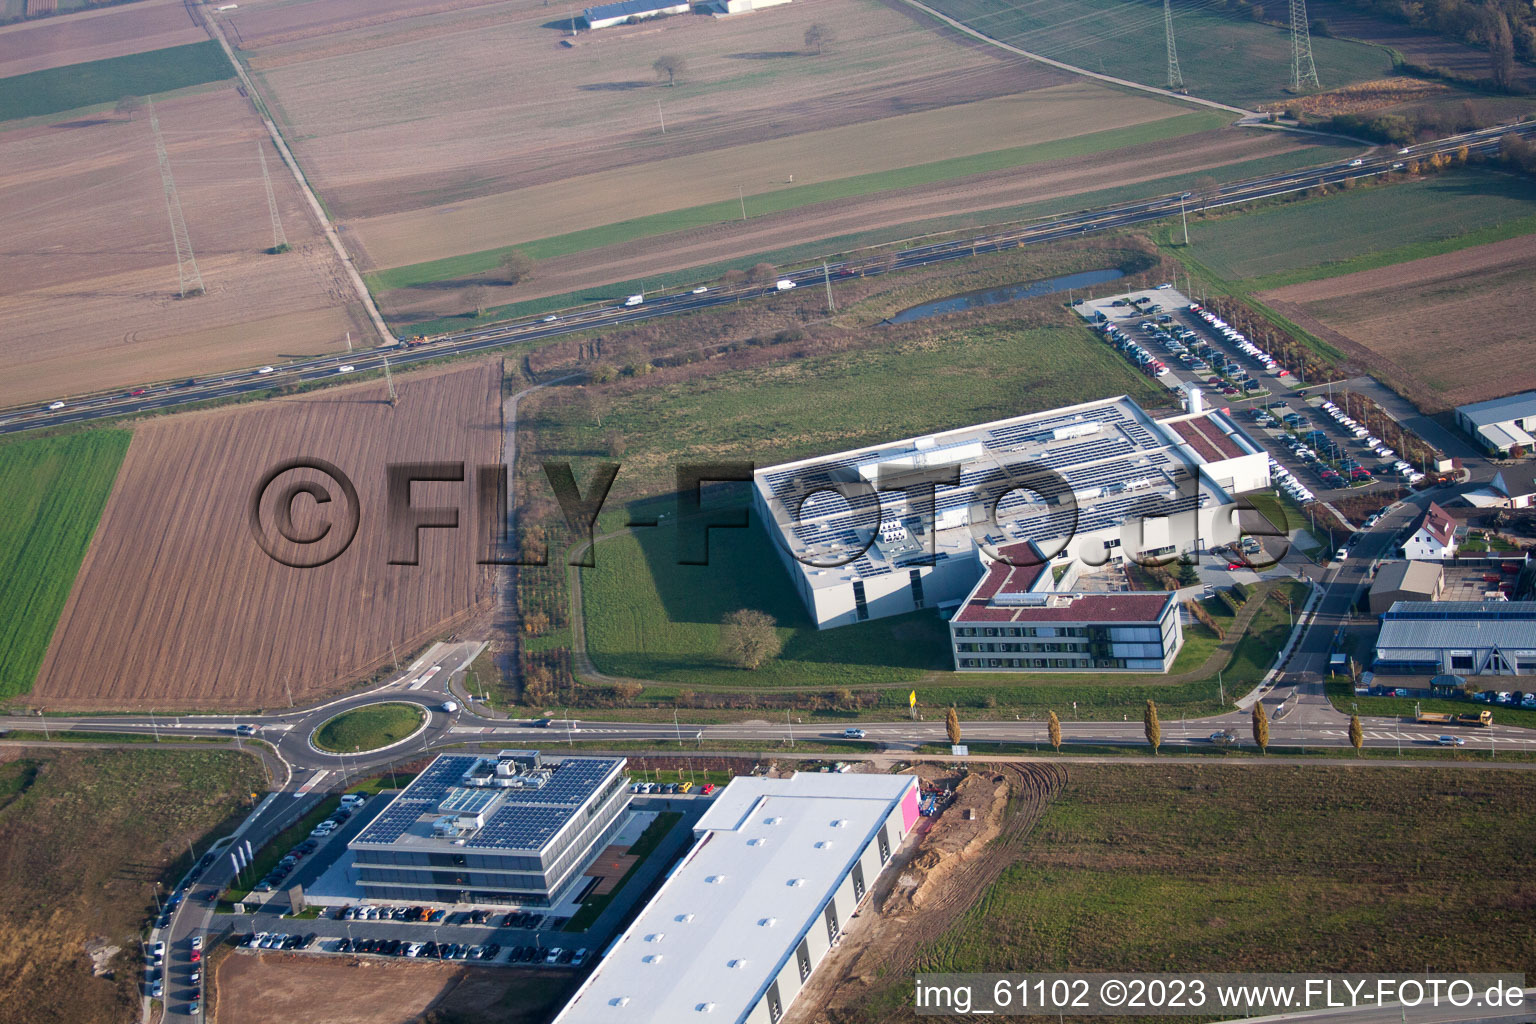 N, zone industrielle à Rülzheim dans le département Rhénanie-Palatinat, Allemagne du point de vue du drone